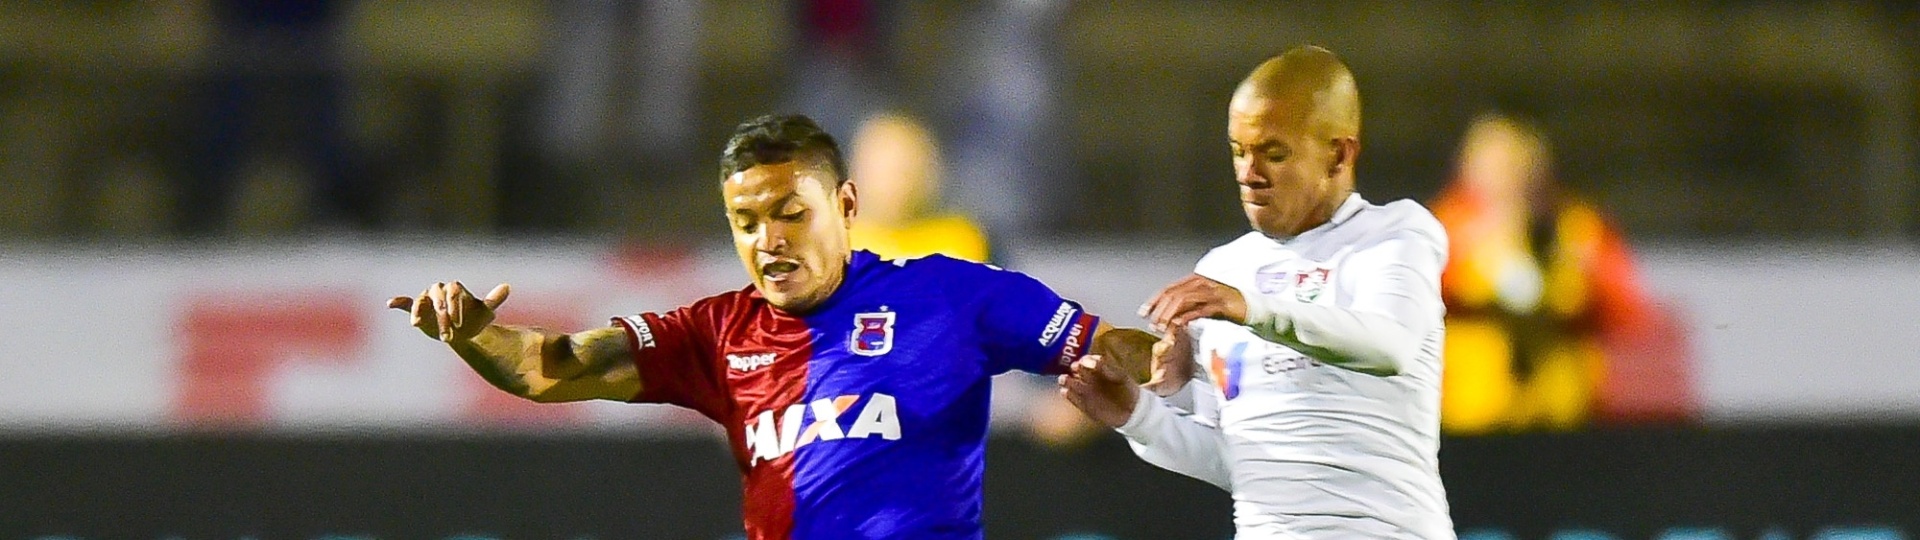 Carlos Eduardo é marcado por Marcos Júnior no jogo entre Paraná e Fluminense